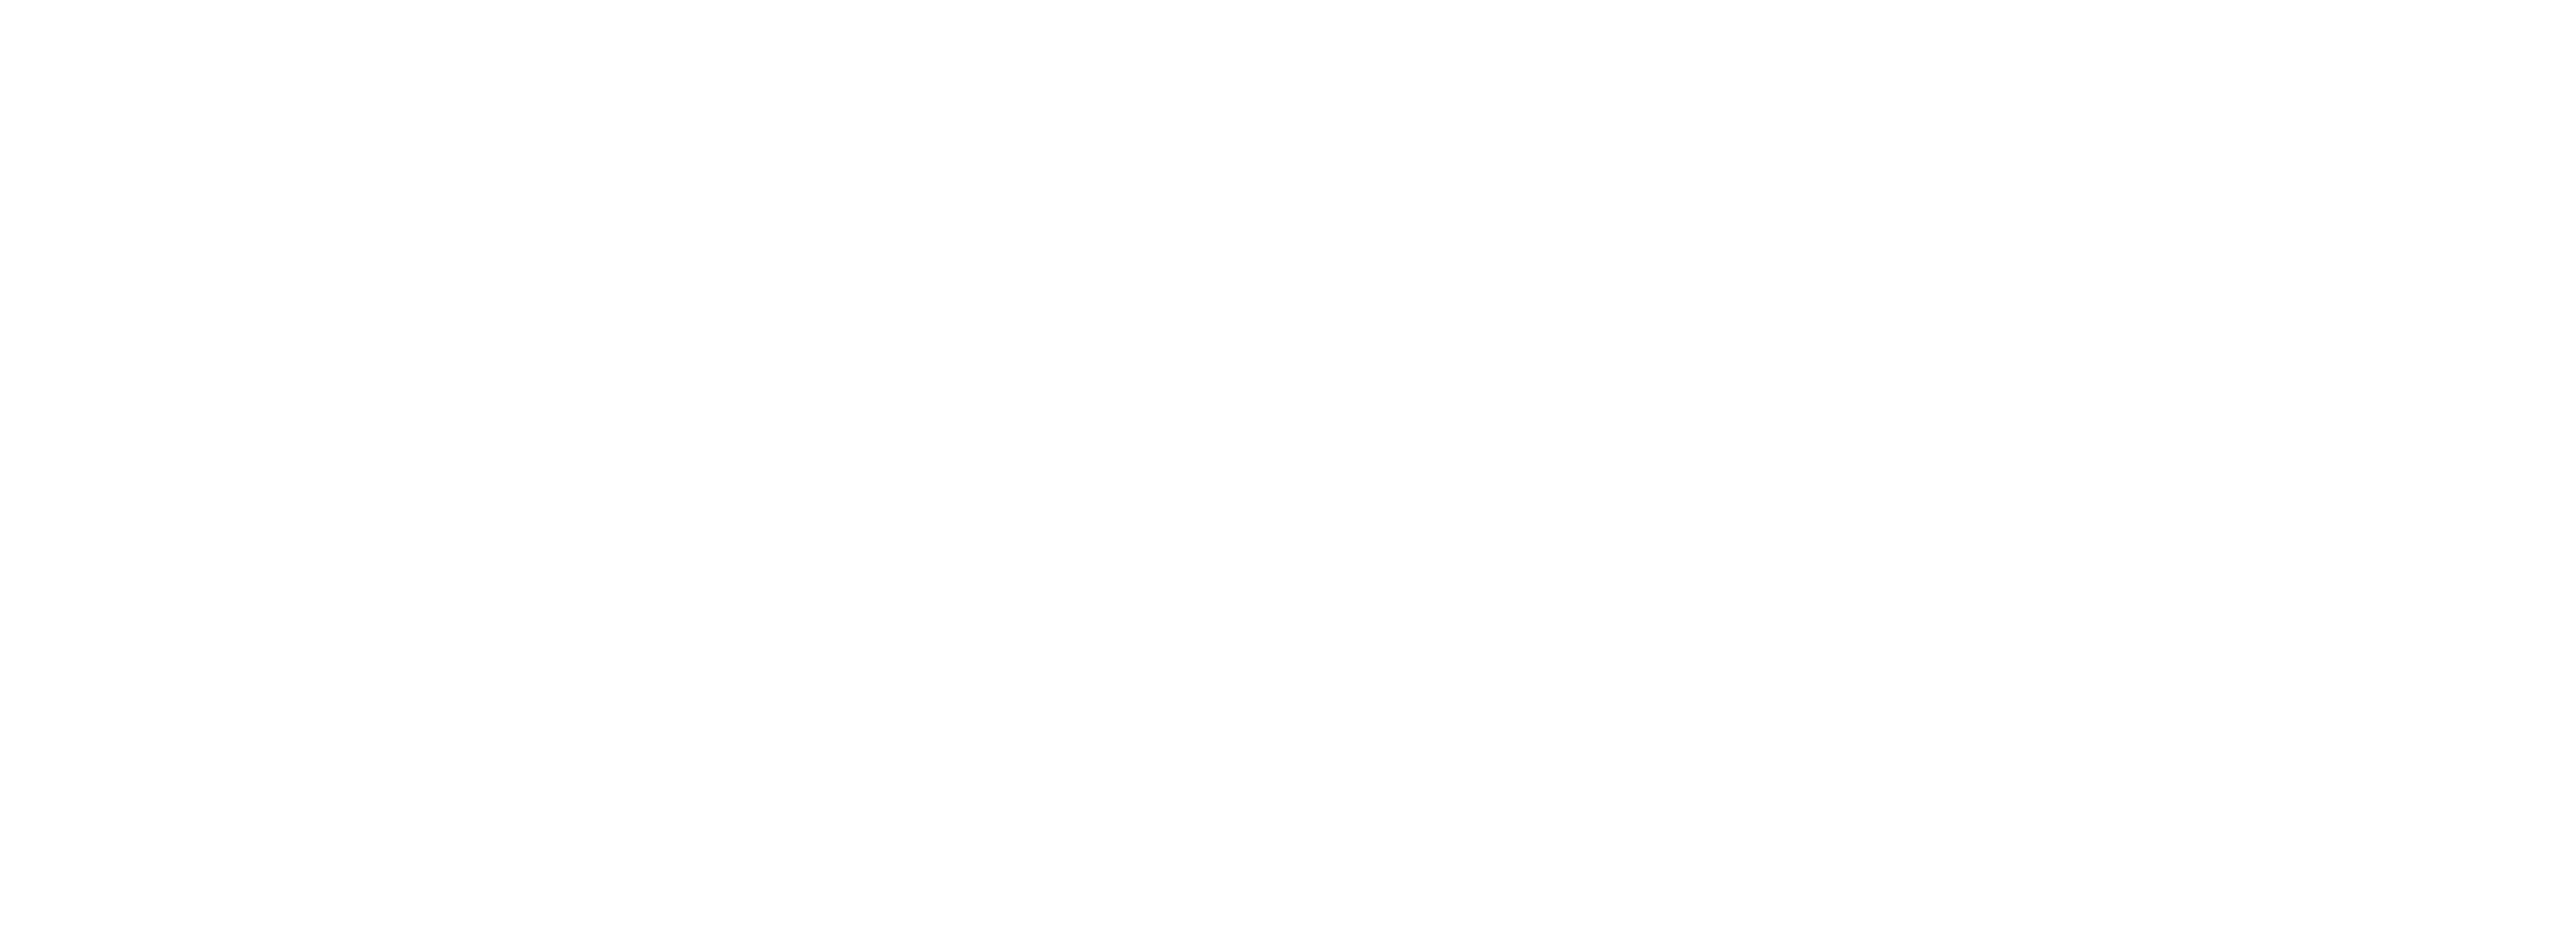 Vertu Motors logo in white